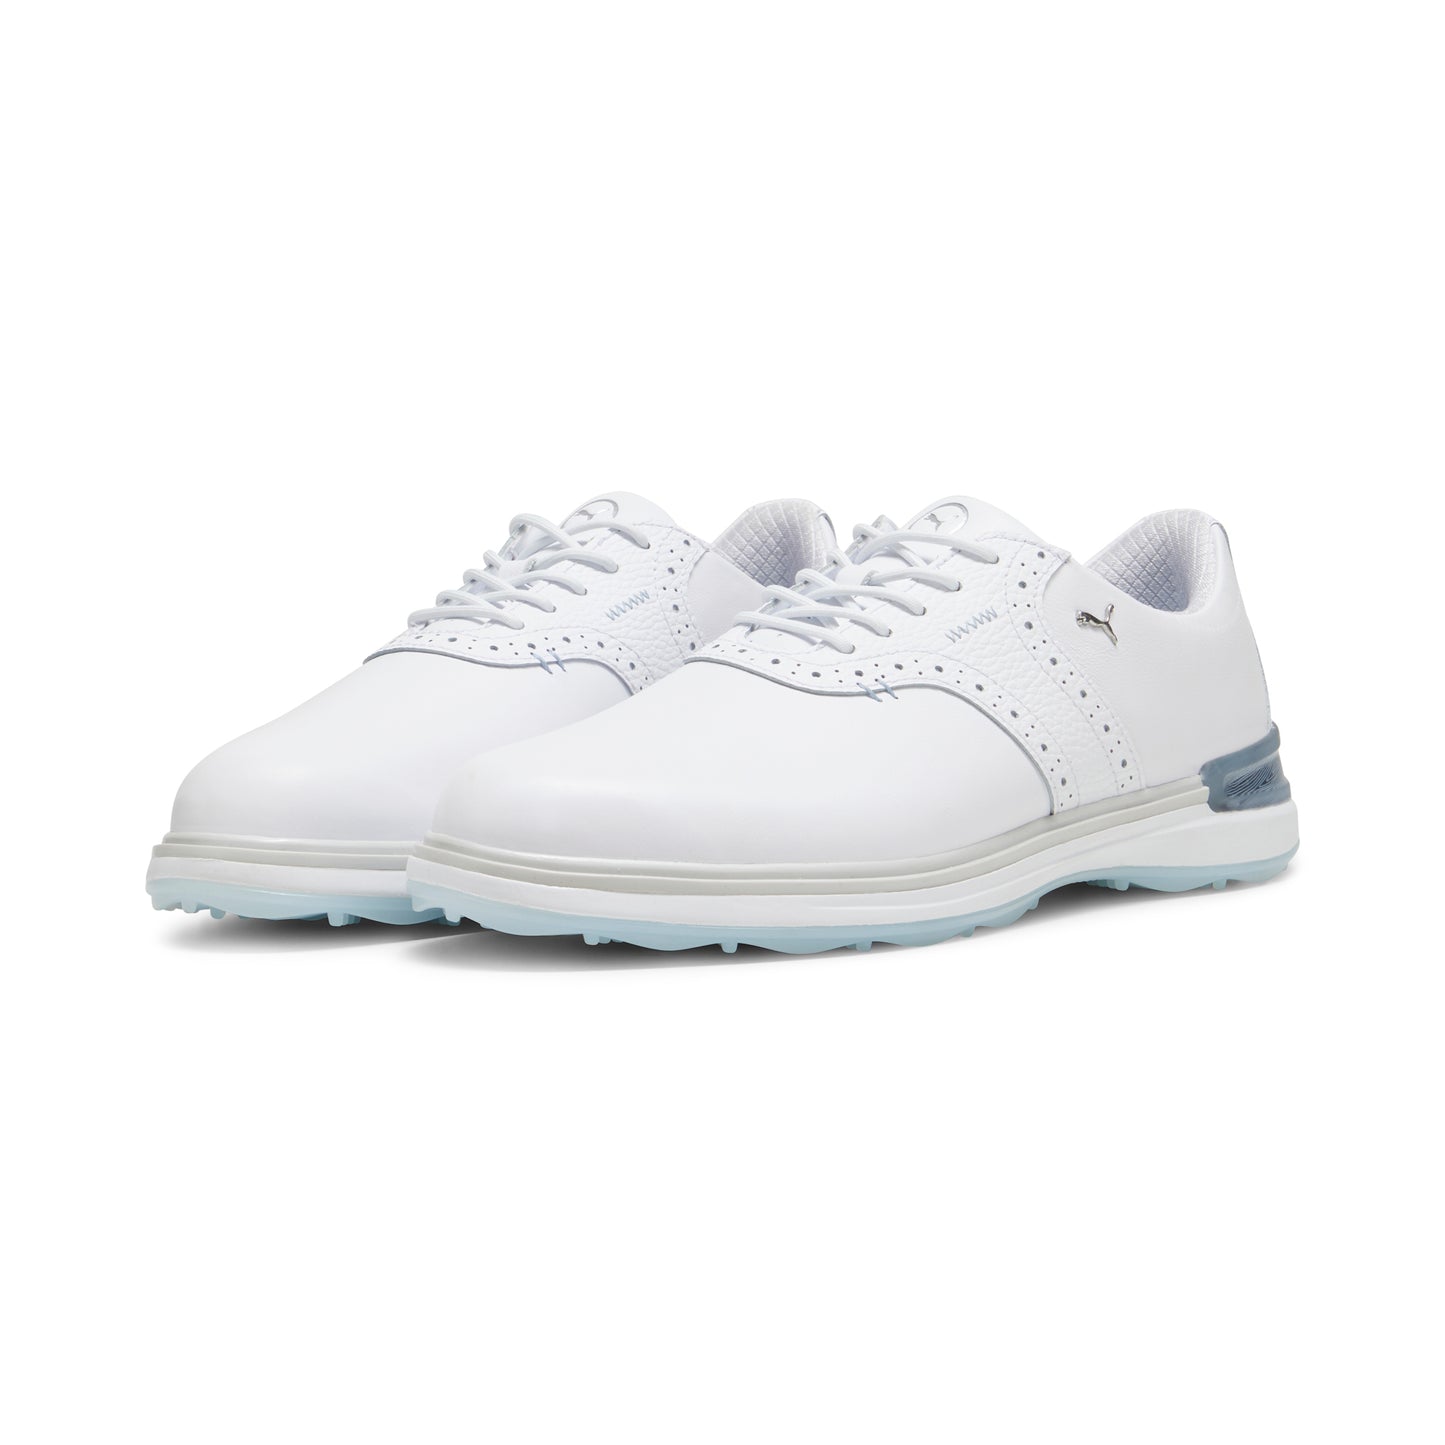 AVANT Spikeless Golf Shoes – PUMA Golf